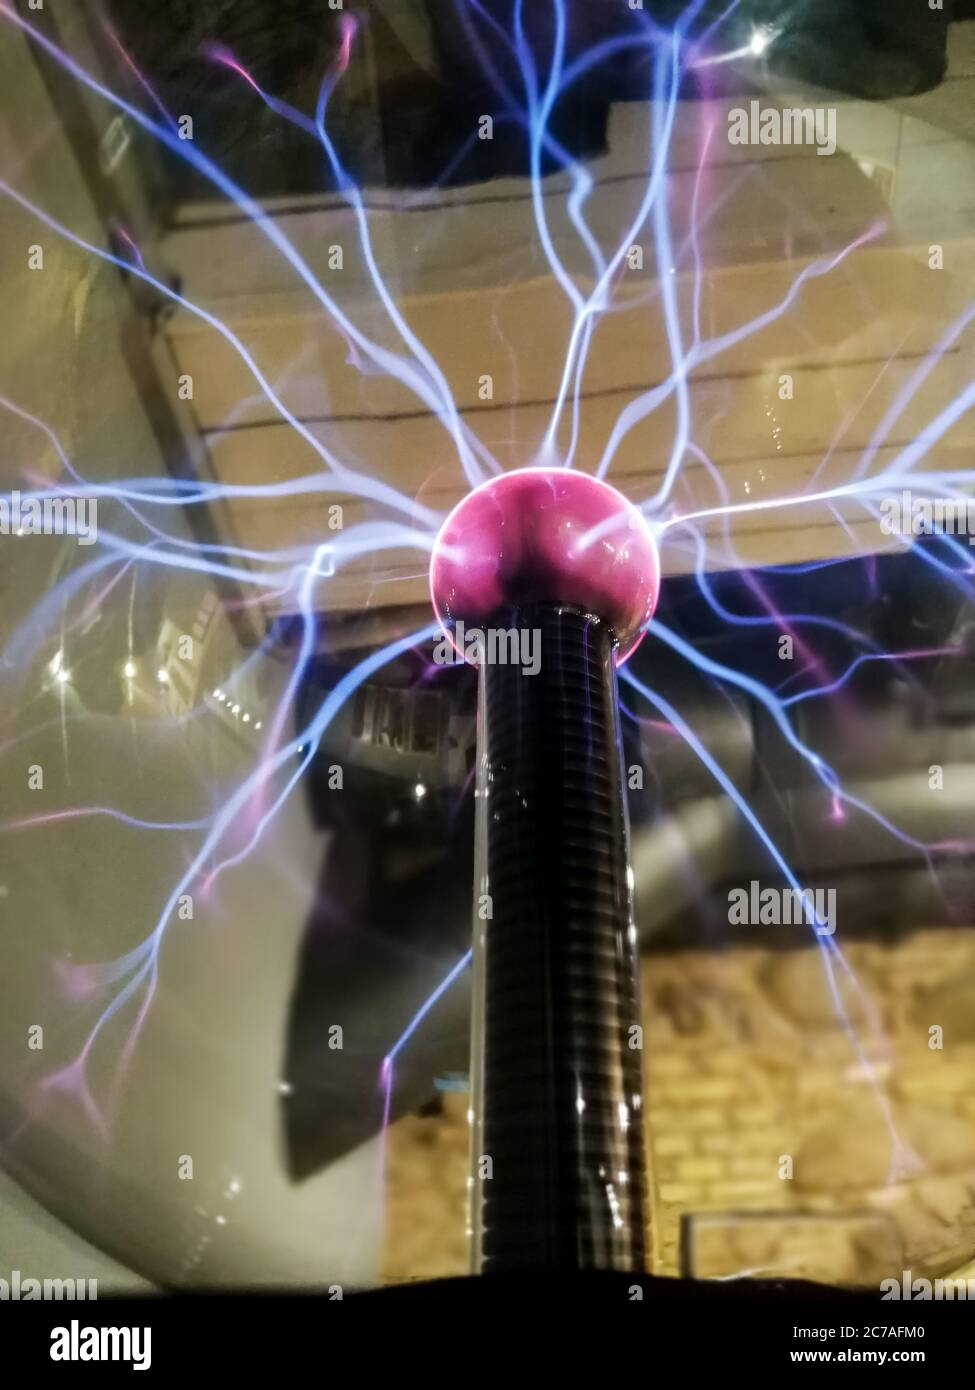 Décharge Corona dans la boule de plasma. Invention de Nikola Tesla Banque D'Images